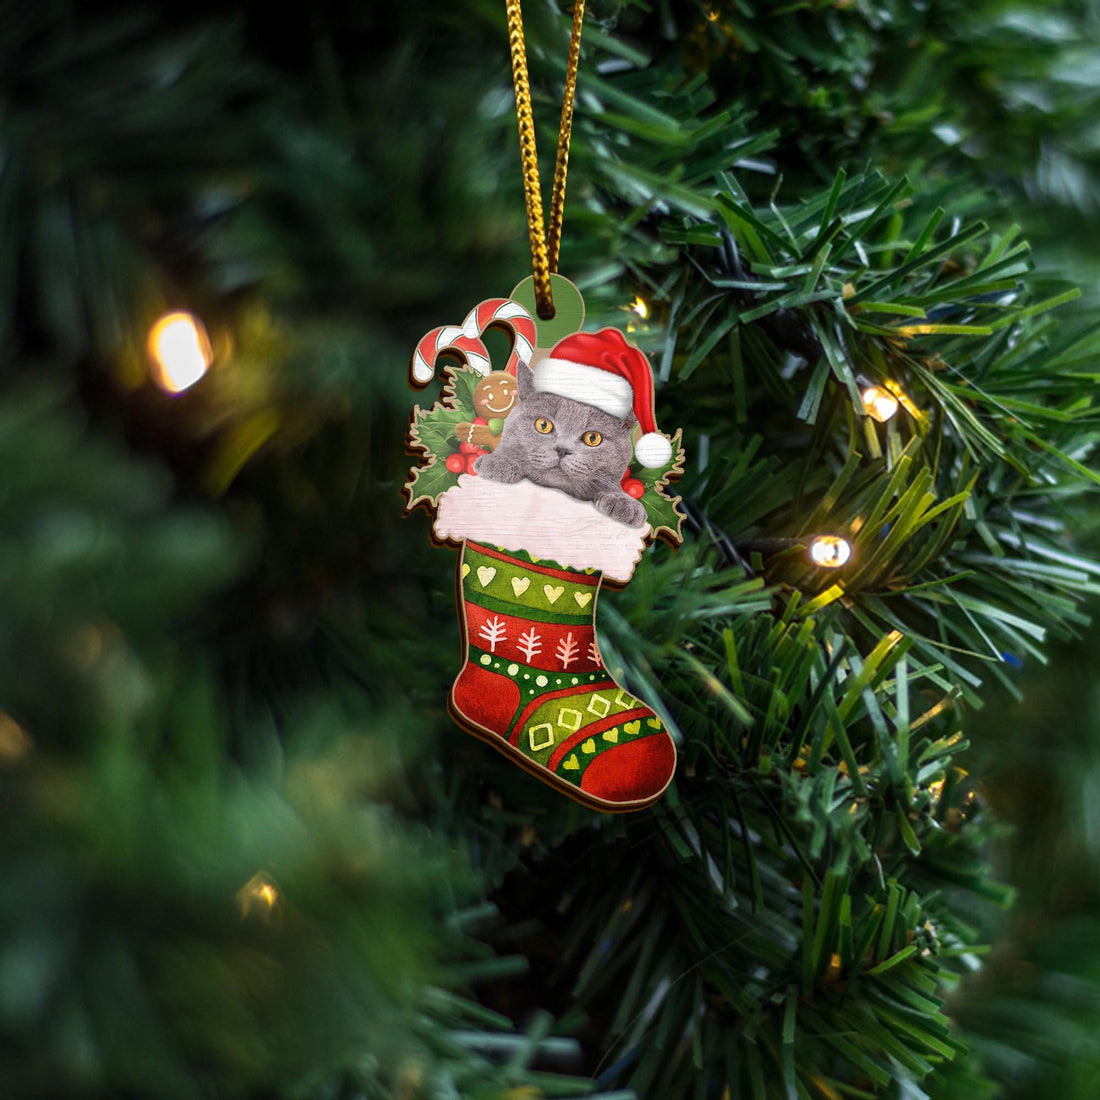 Cute Cat Sock Christmas Ornament, Cat Decor, Cat Gifts, Gifts for Cat Lover, Christmas Ornaments, Christmas Decor, Christmas Tree Decorations